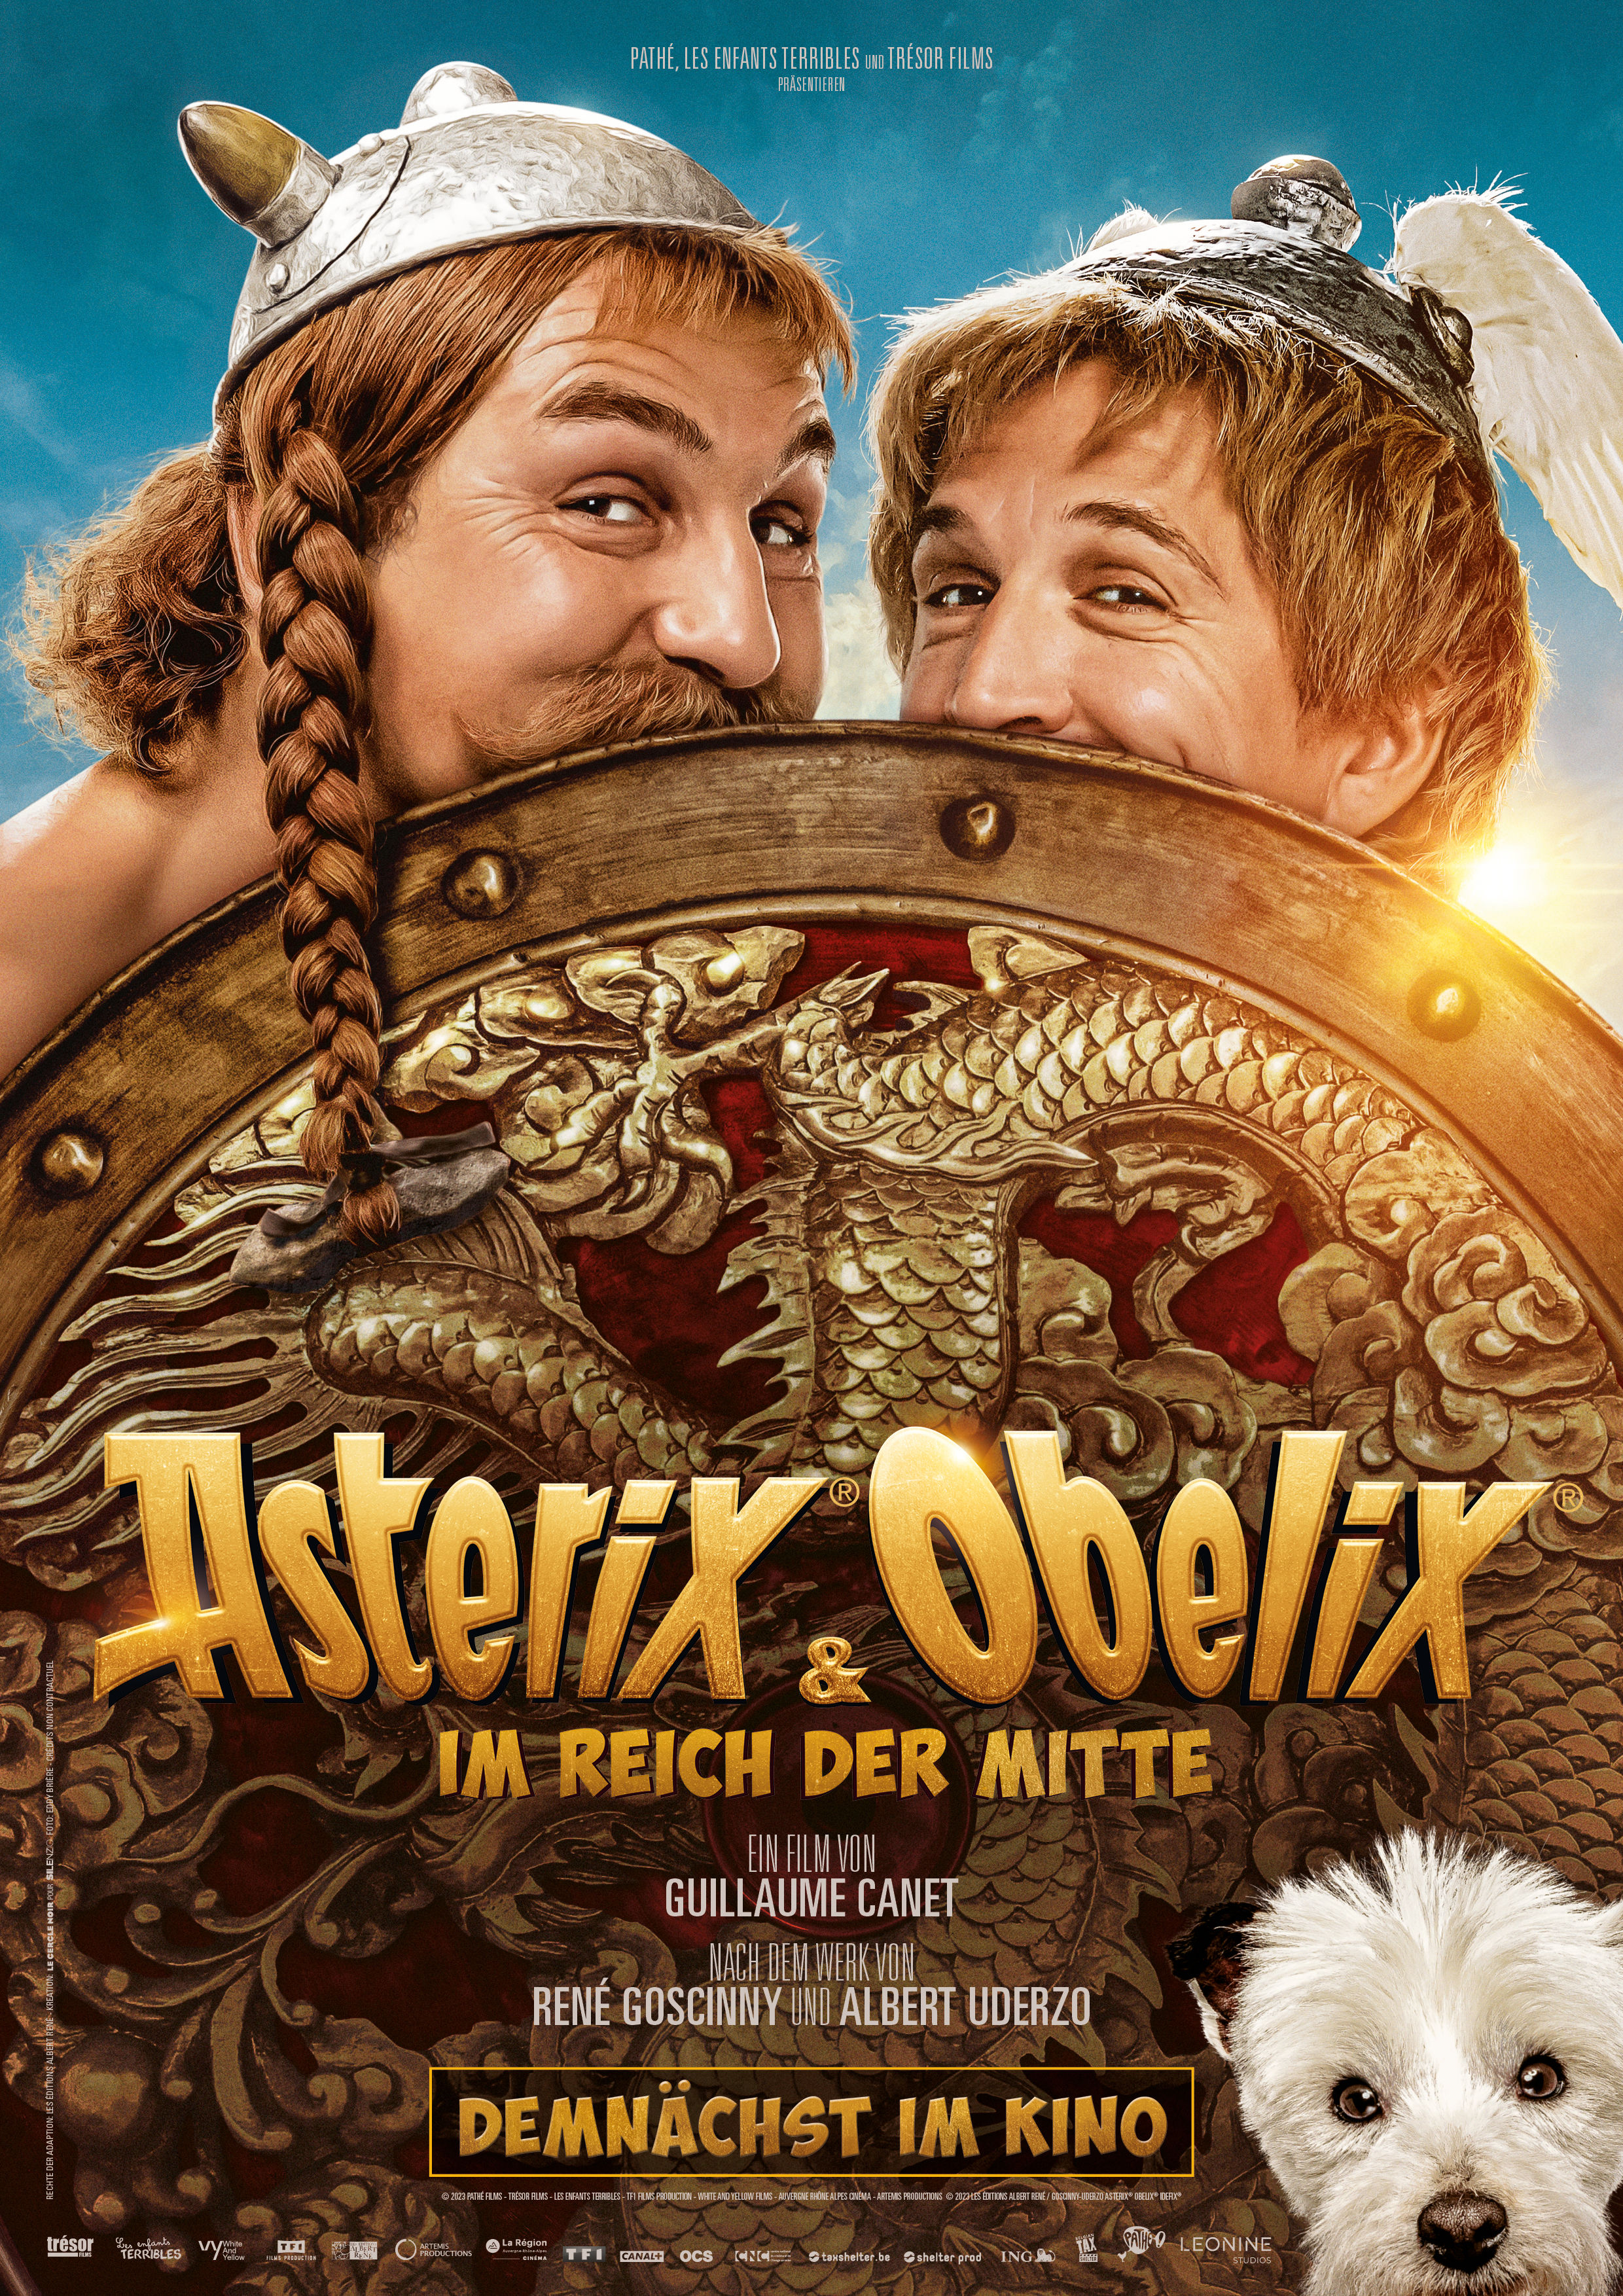 ASTERIX & OBELIX IM REICH DER MITTE - erste Trailer ist da! | Presseportal